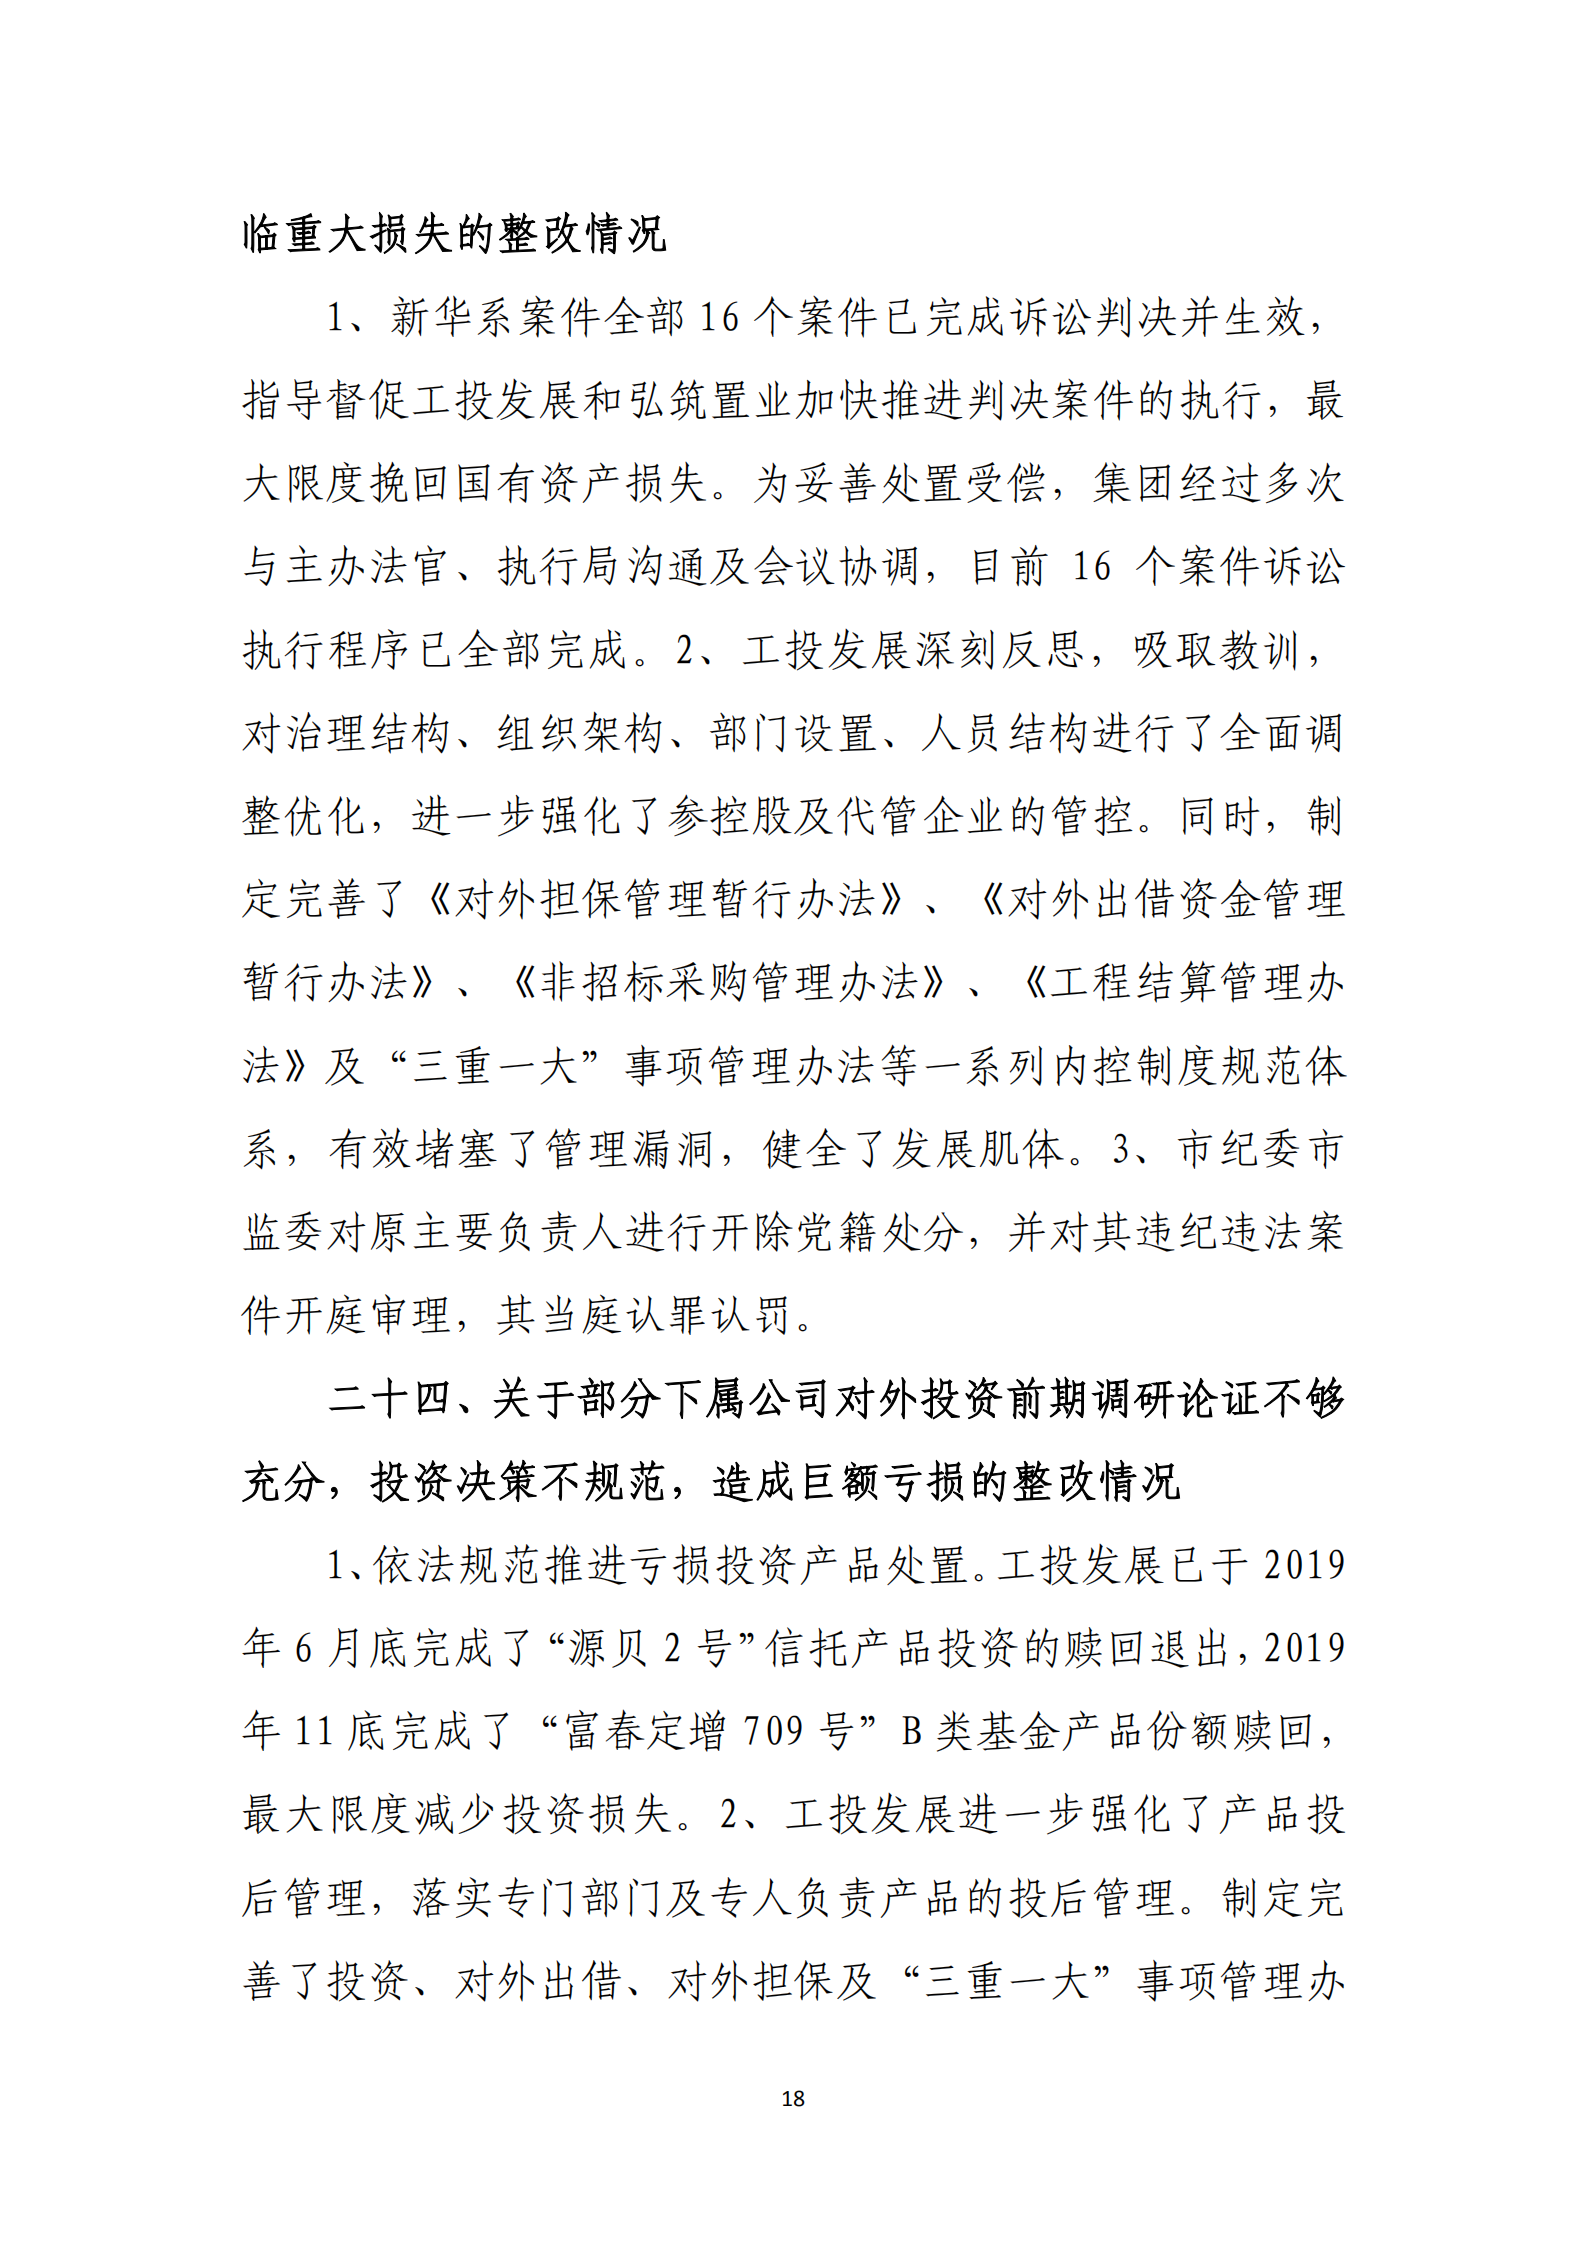 【体育365官方网站】中国有限公司党委关于巡察整改情况的通报_17.png